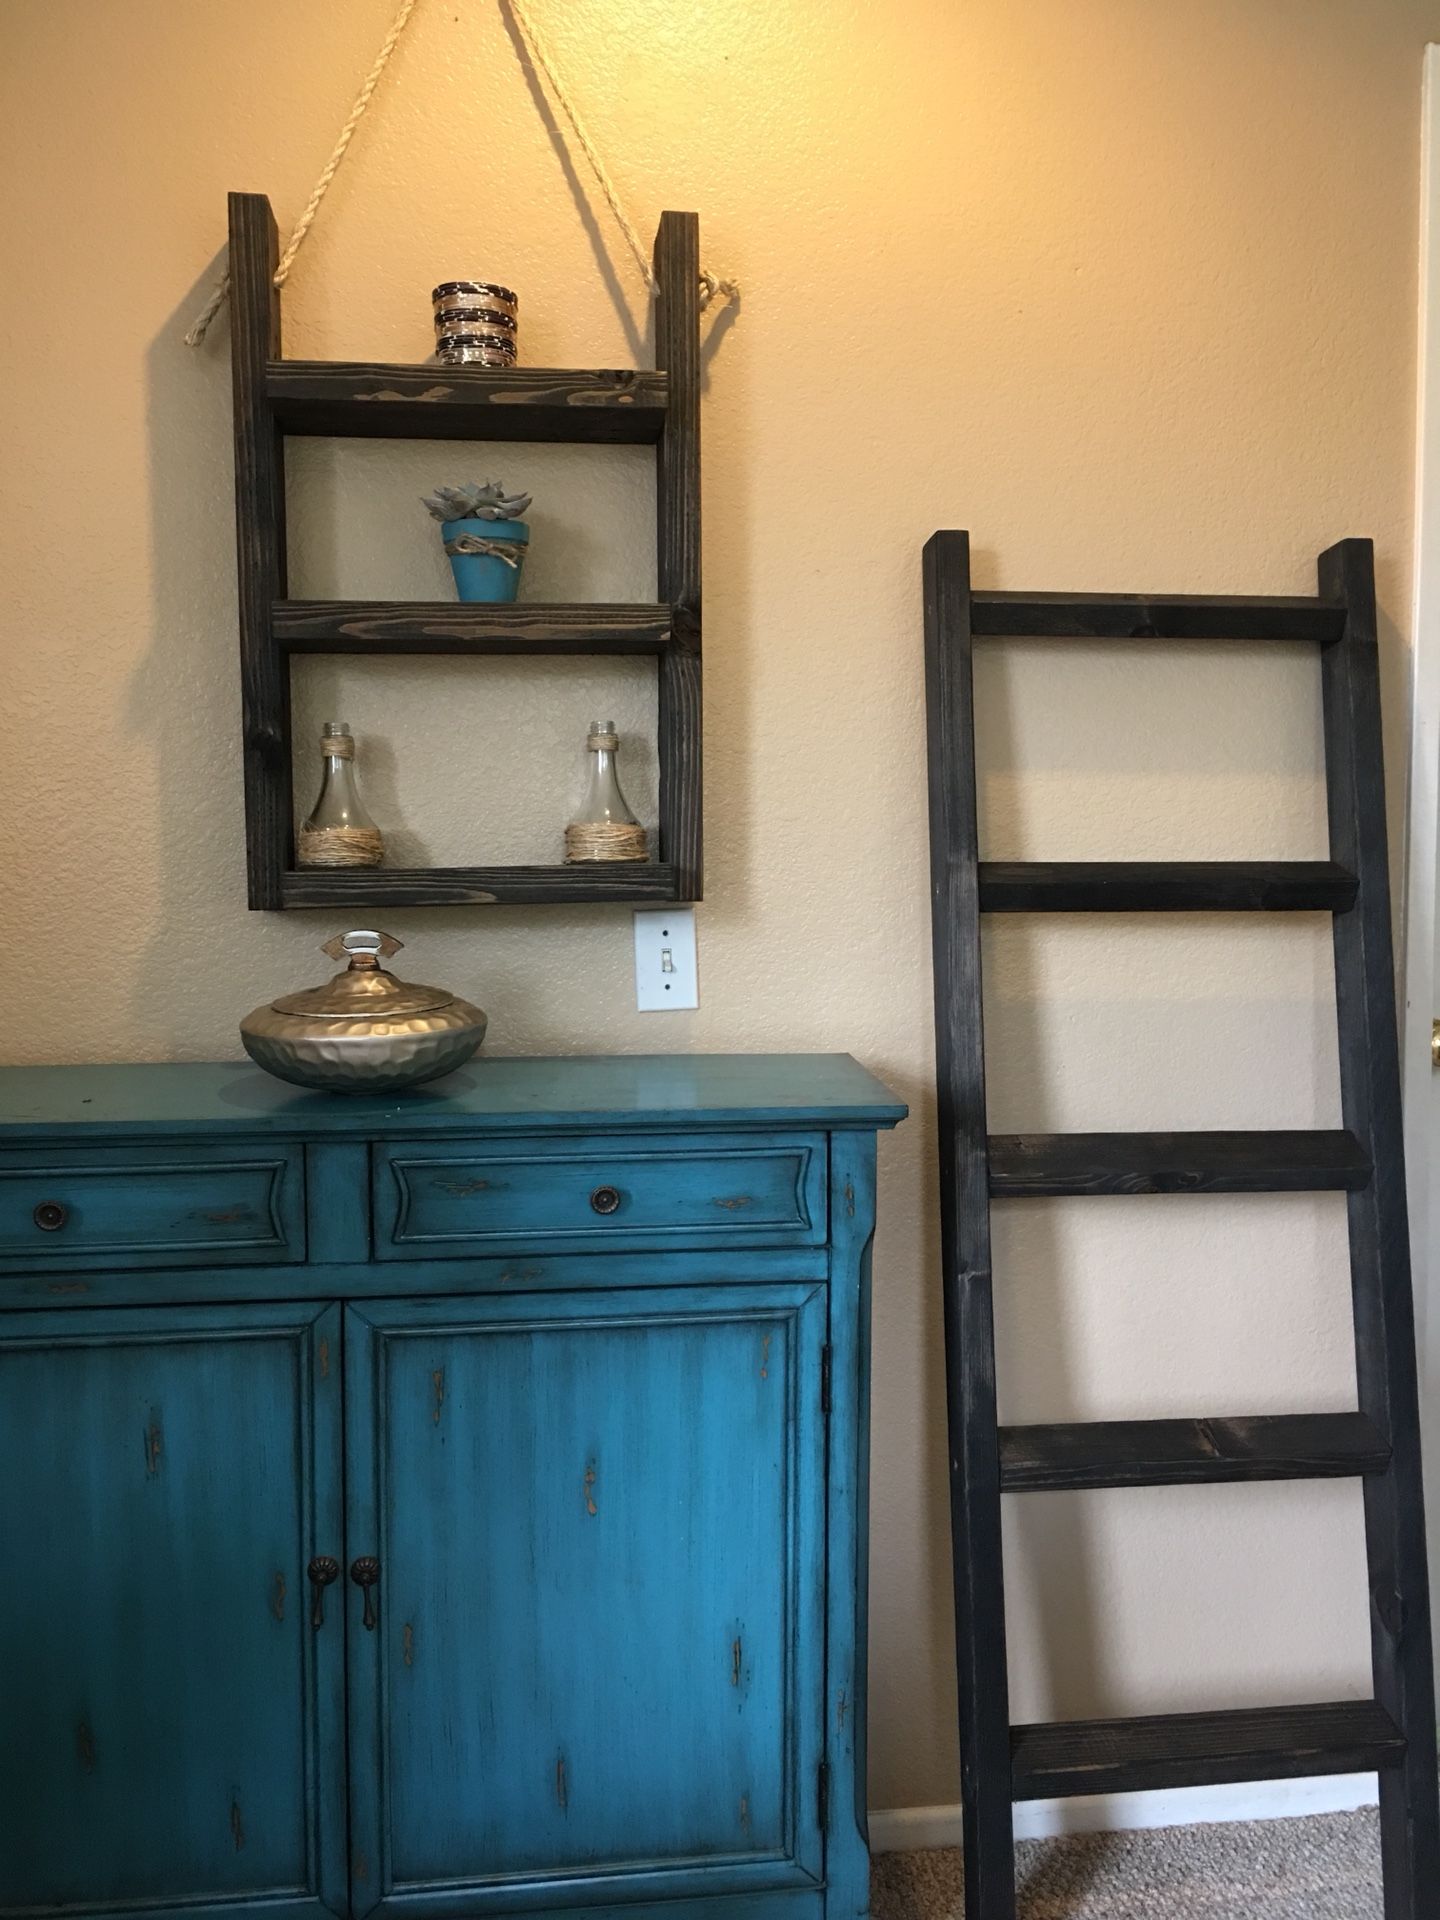 Rustic ladder shelf and blanket/towel ladder